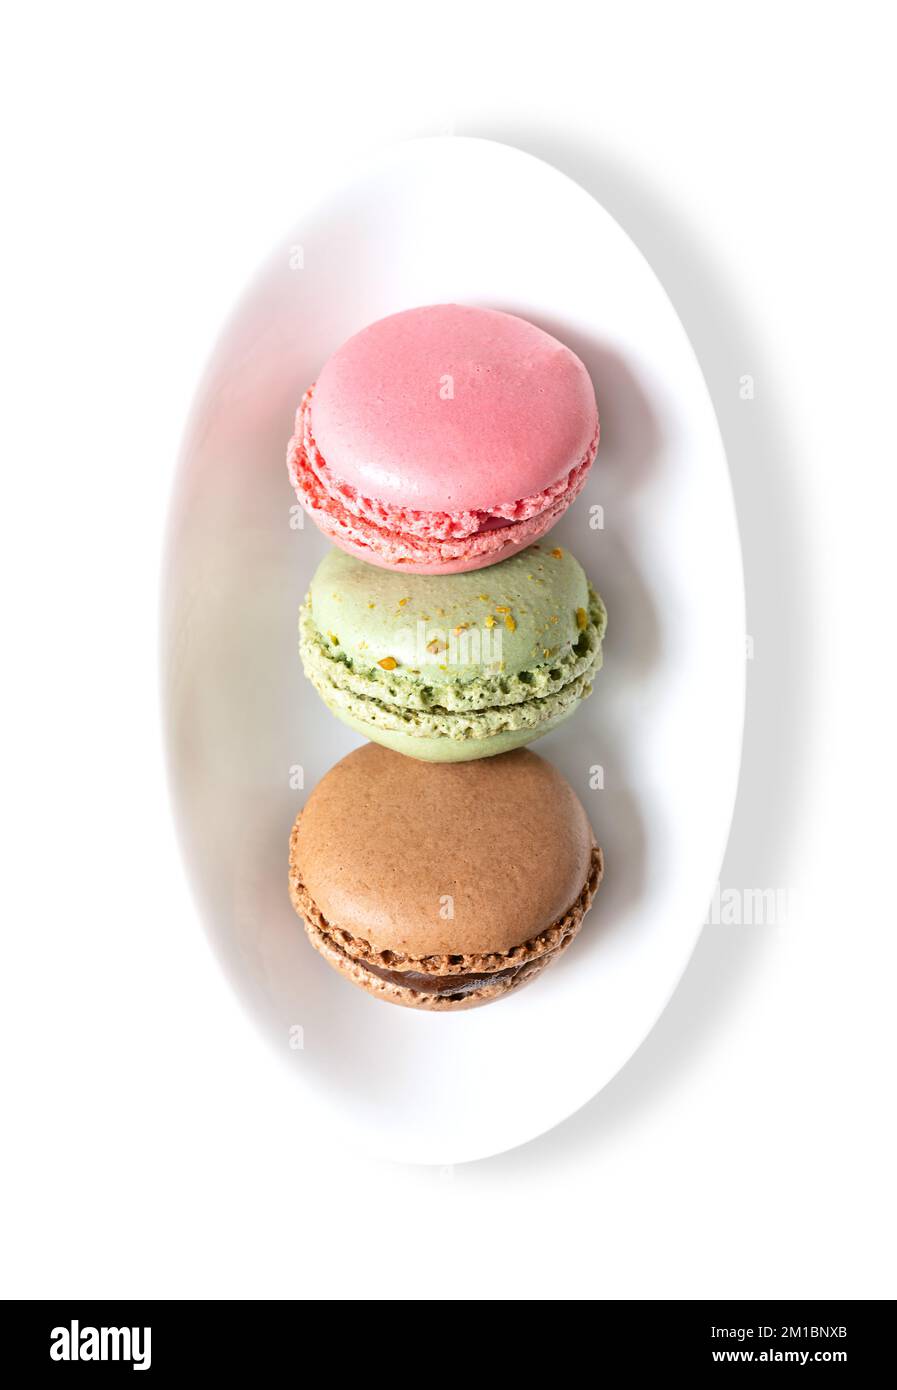 Makronen, französische Makronen in einer weißen Schüssel. Süße Konfekt auf Baiser-Basis im Pariser Stil, mit Eiweiß, Zucker, Mandeln und Lebensmittelfarben. Stockfoto